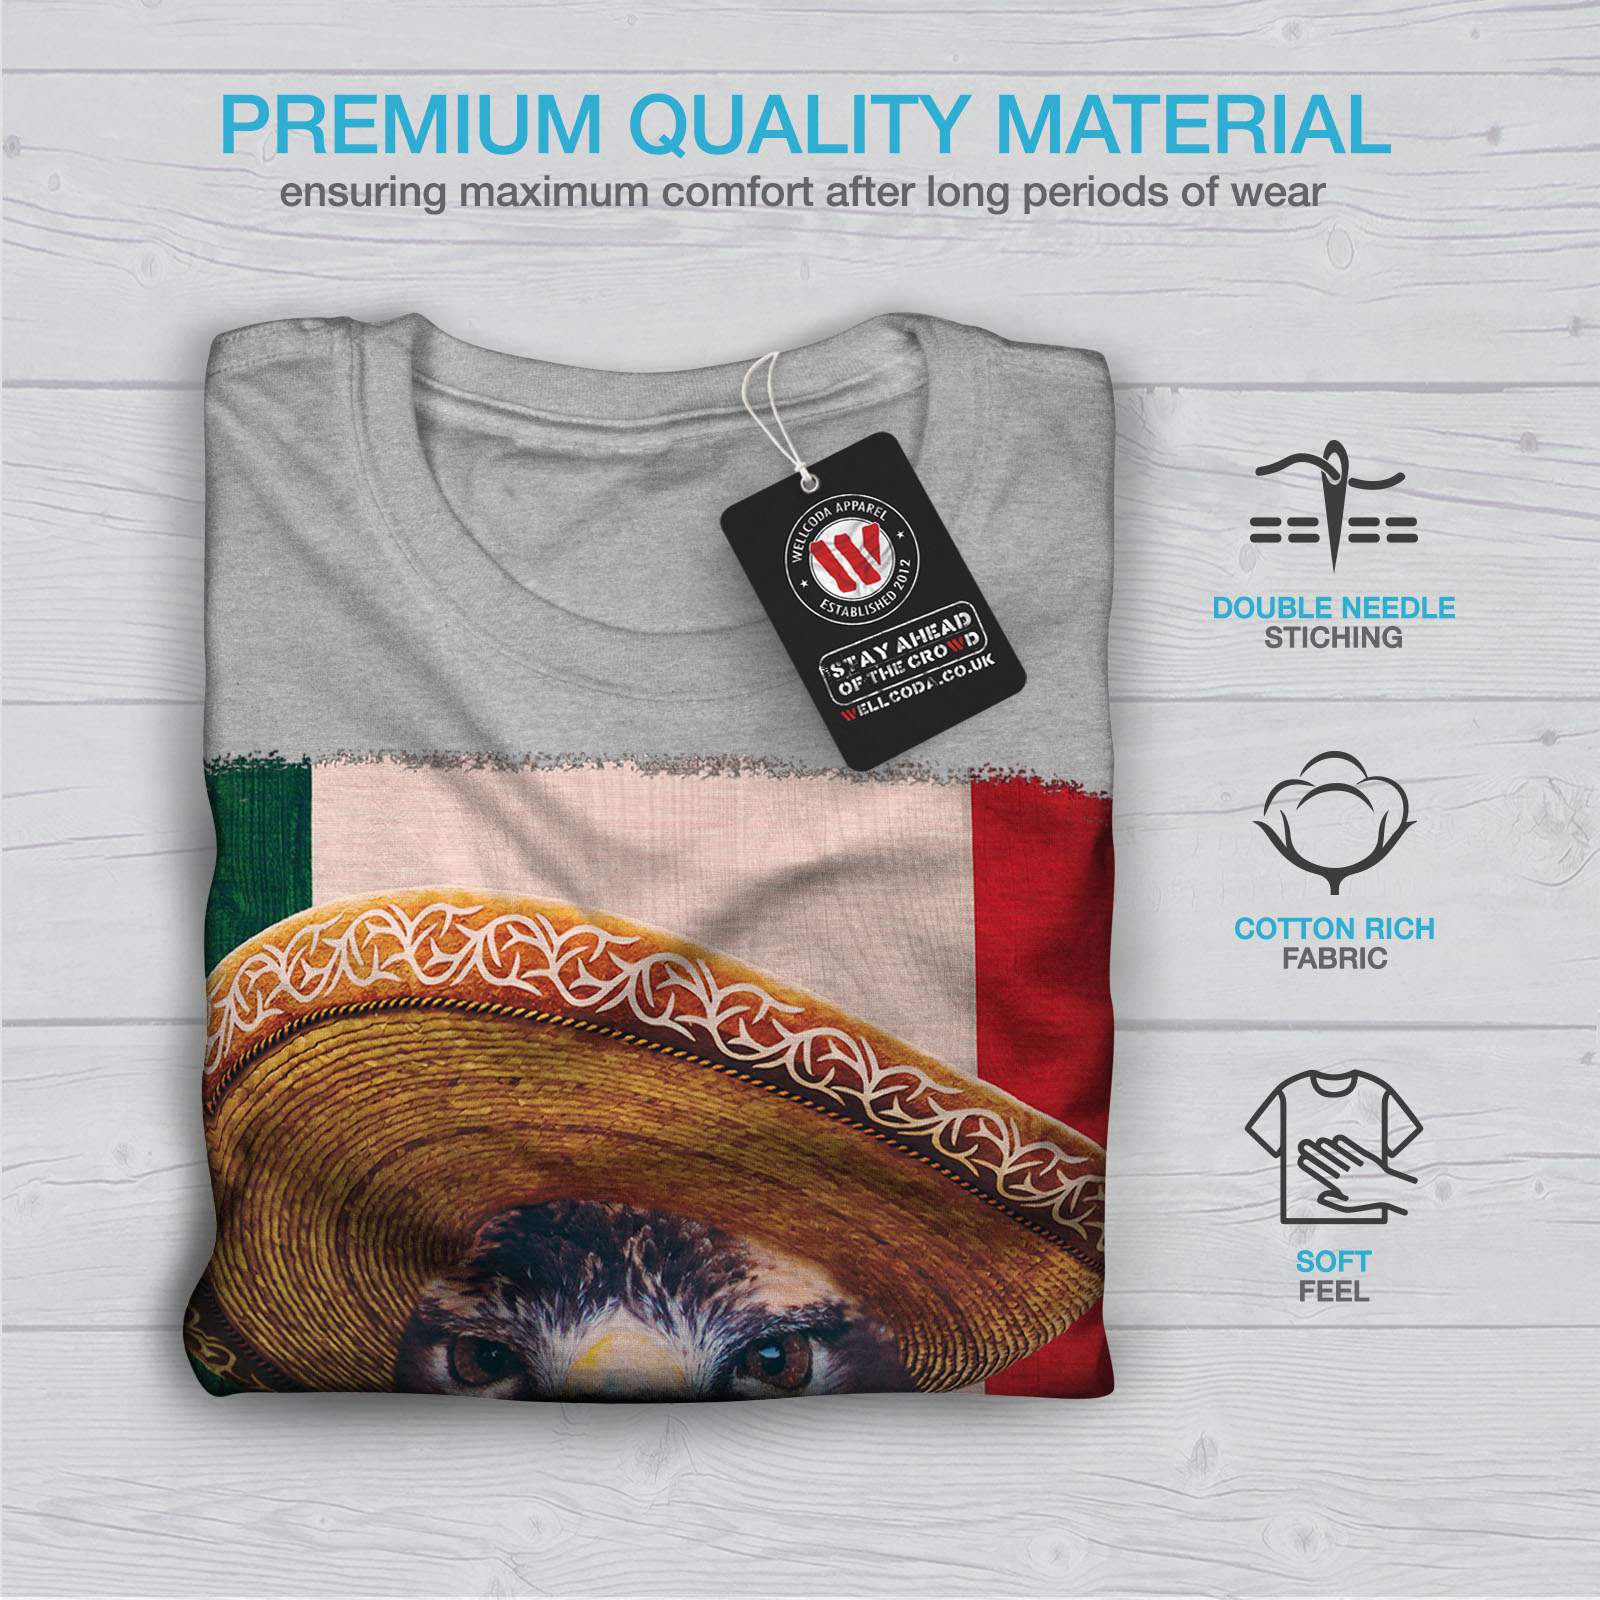 Wellcoda Eagle Bird Sombrero Mens T-shirt Mexico Graphic Design Printed Tee 